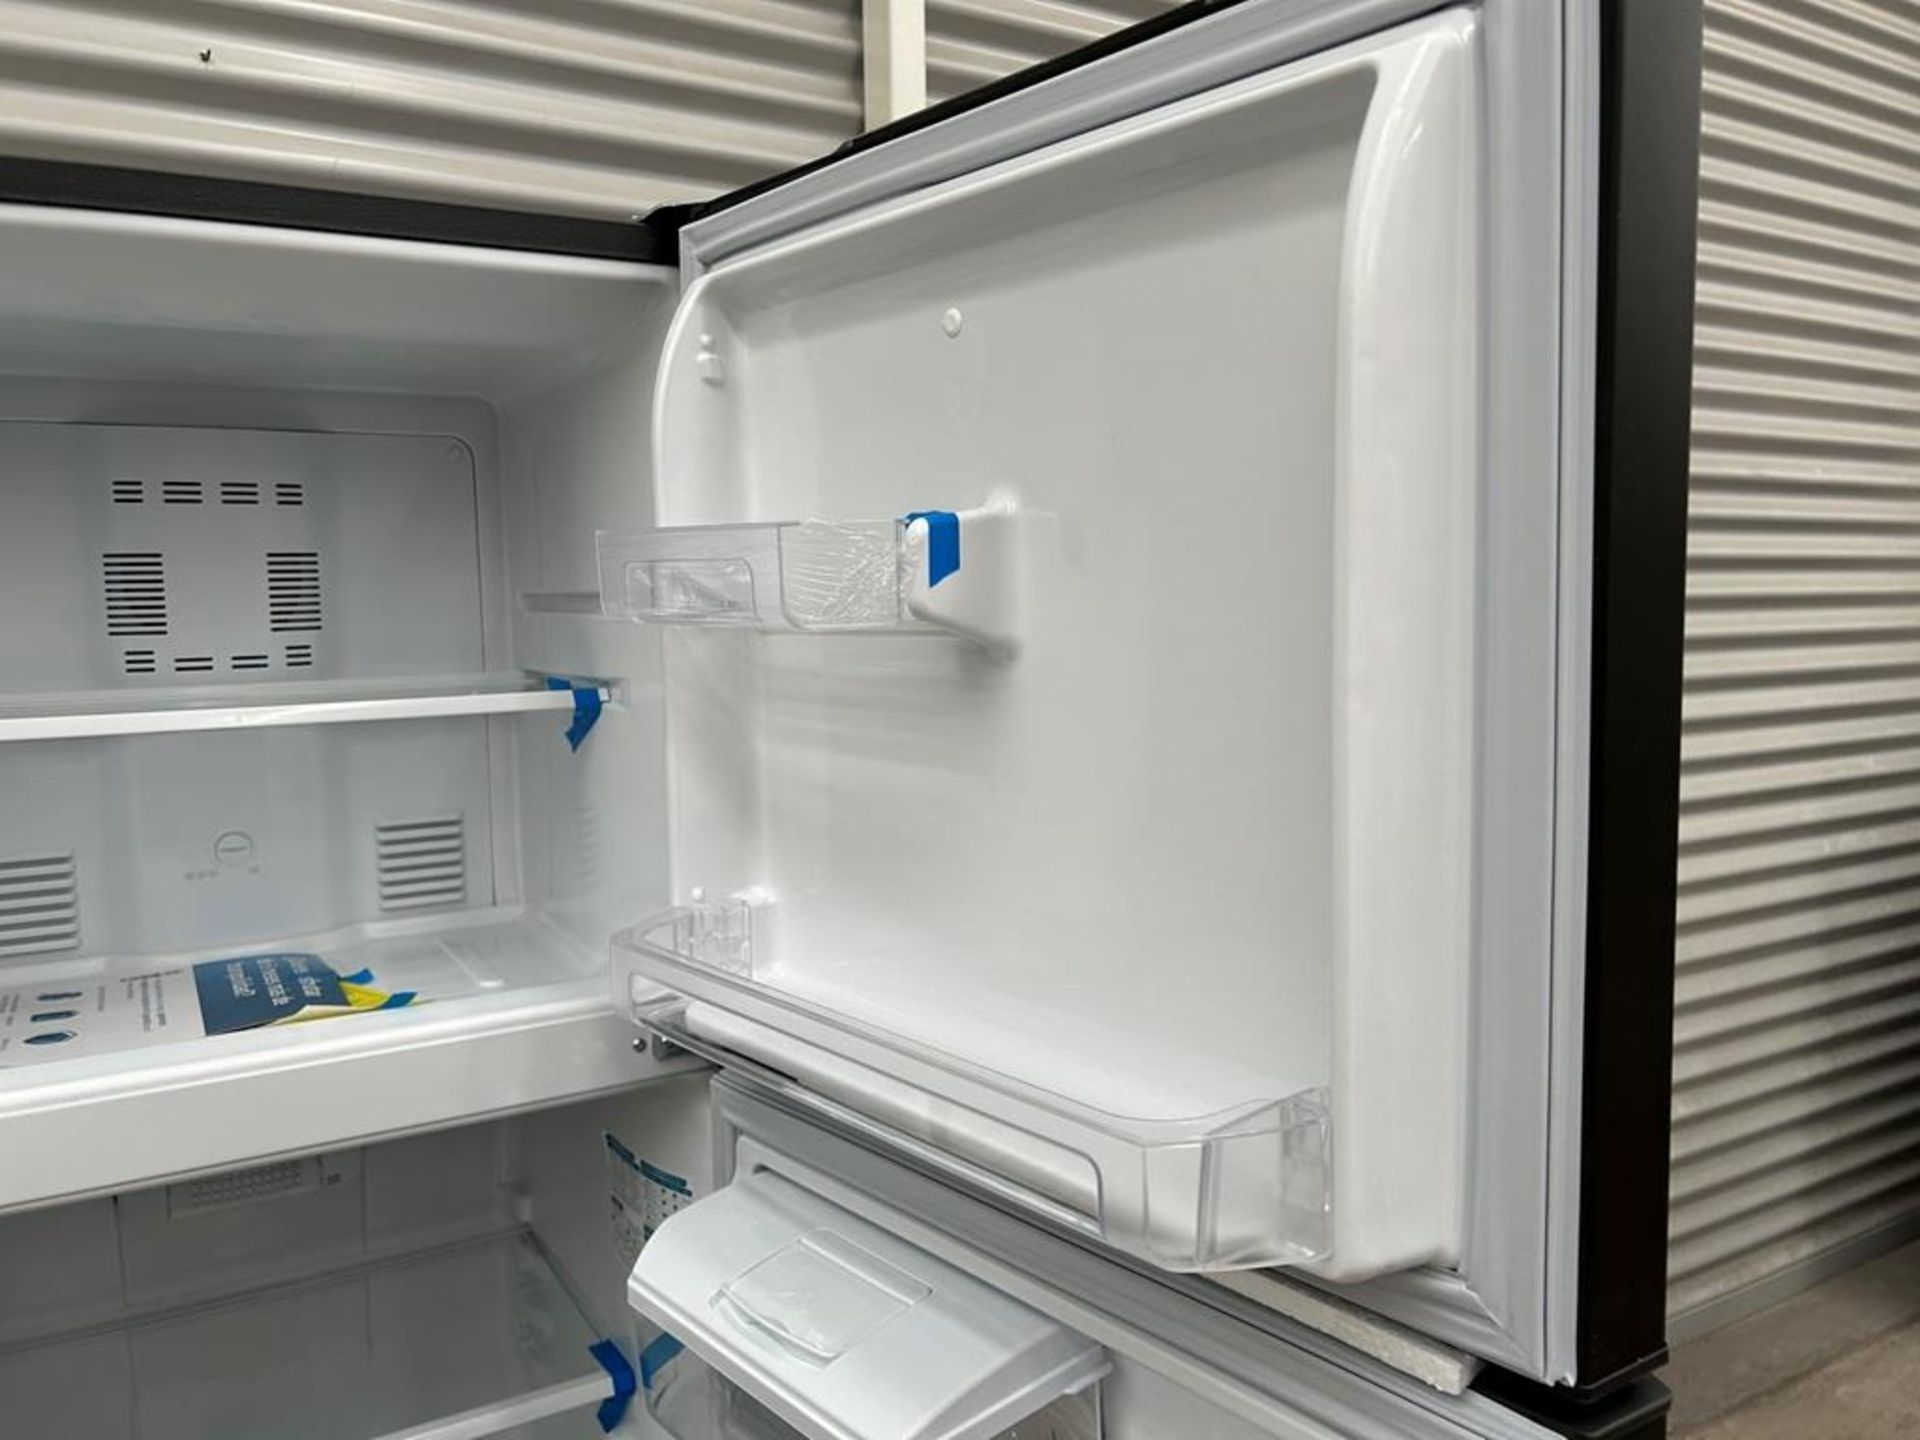 Lote de 2 refrigeradores contiene: 1 Refrigerador con dispensador de agua Marca MABE, Modelo RMA300 - Image 13 of 18